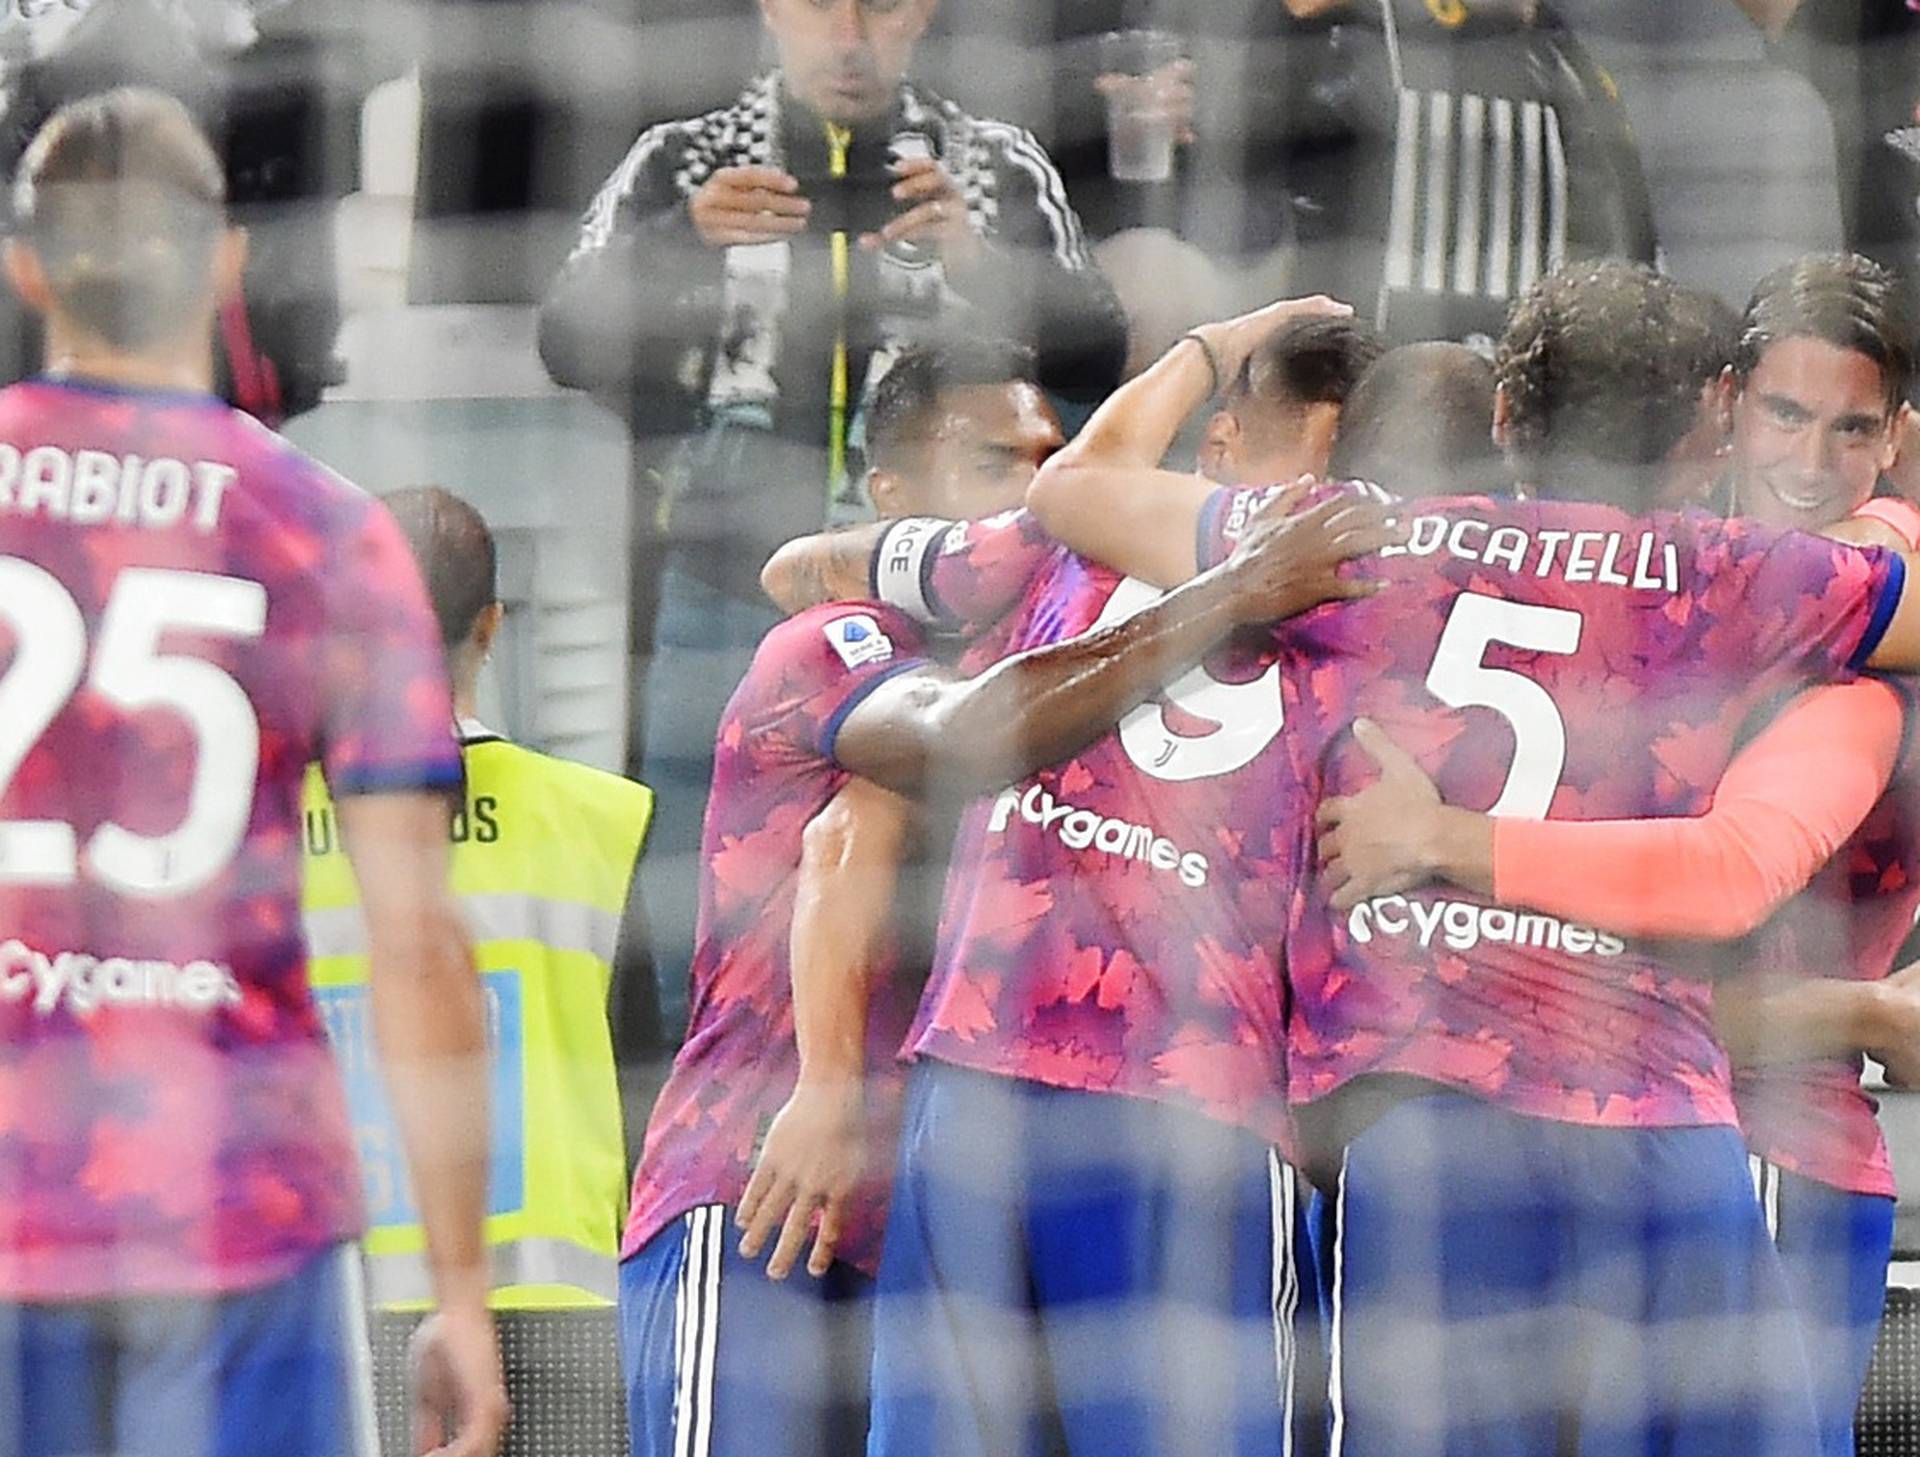 Serie A - Juventus v Bologna